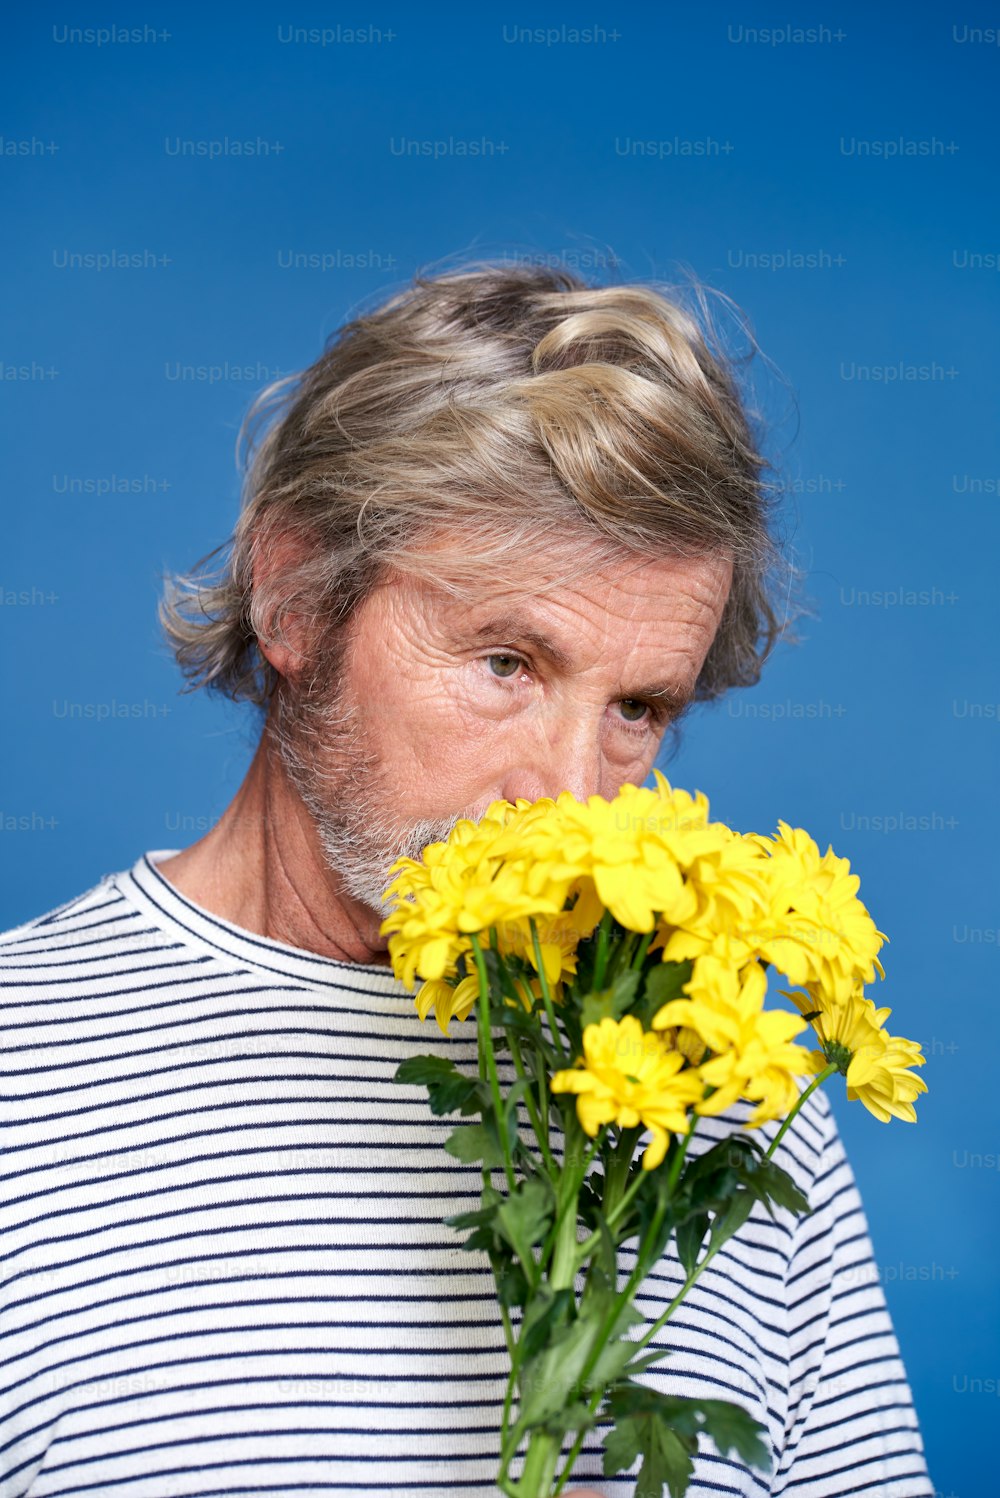 Un homme tenant un bouquet de fleurs jaunes